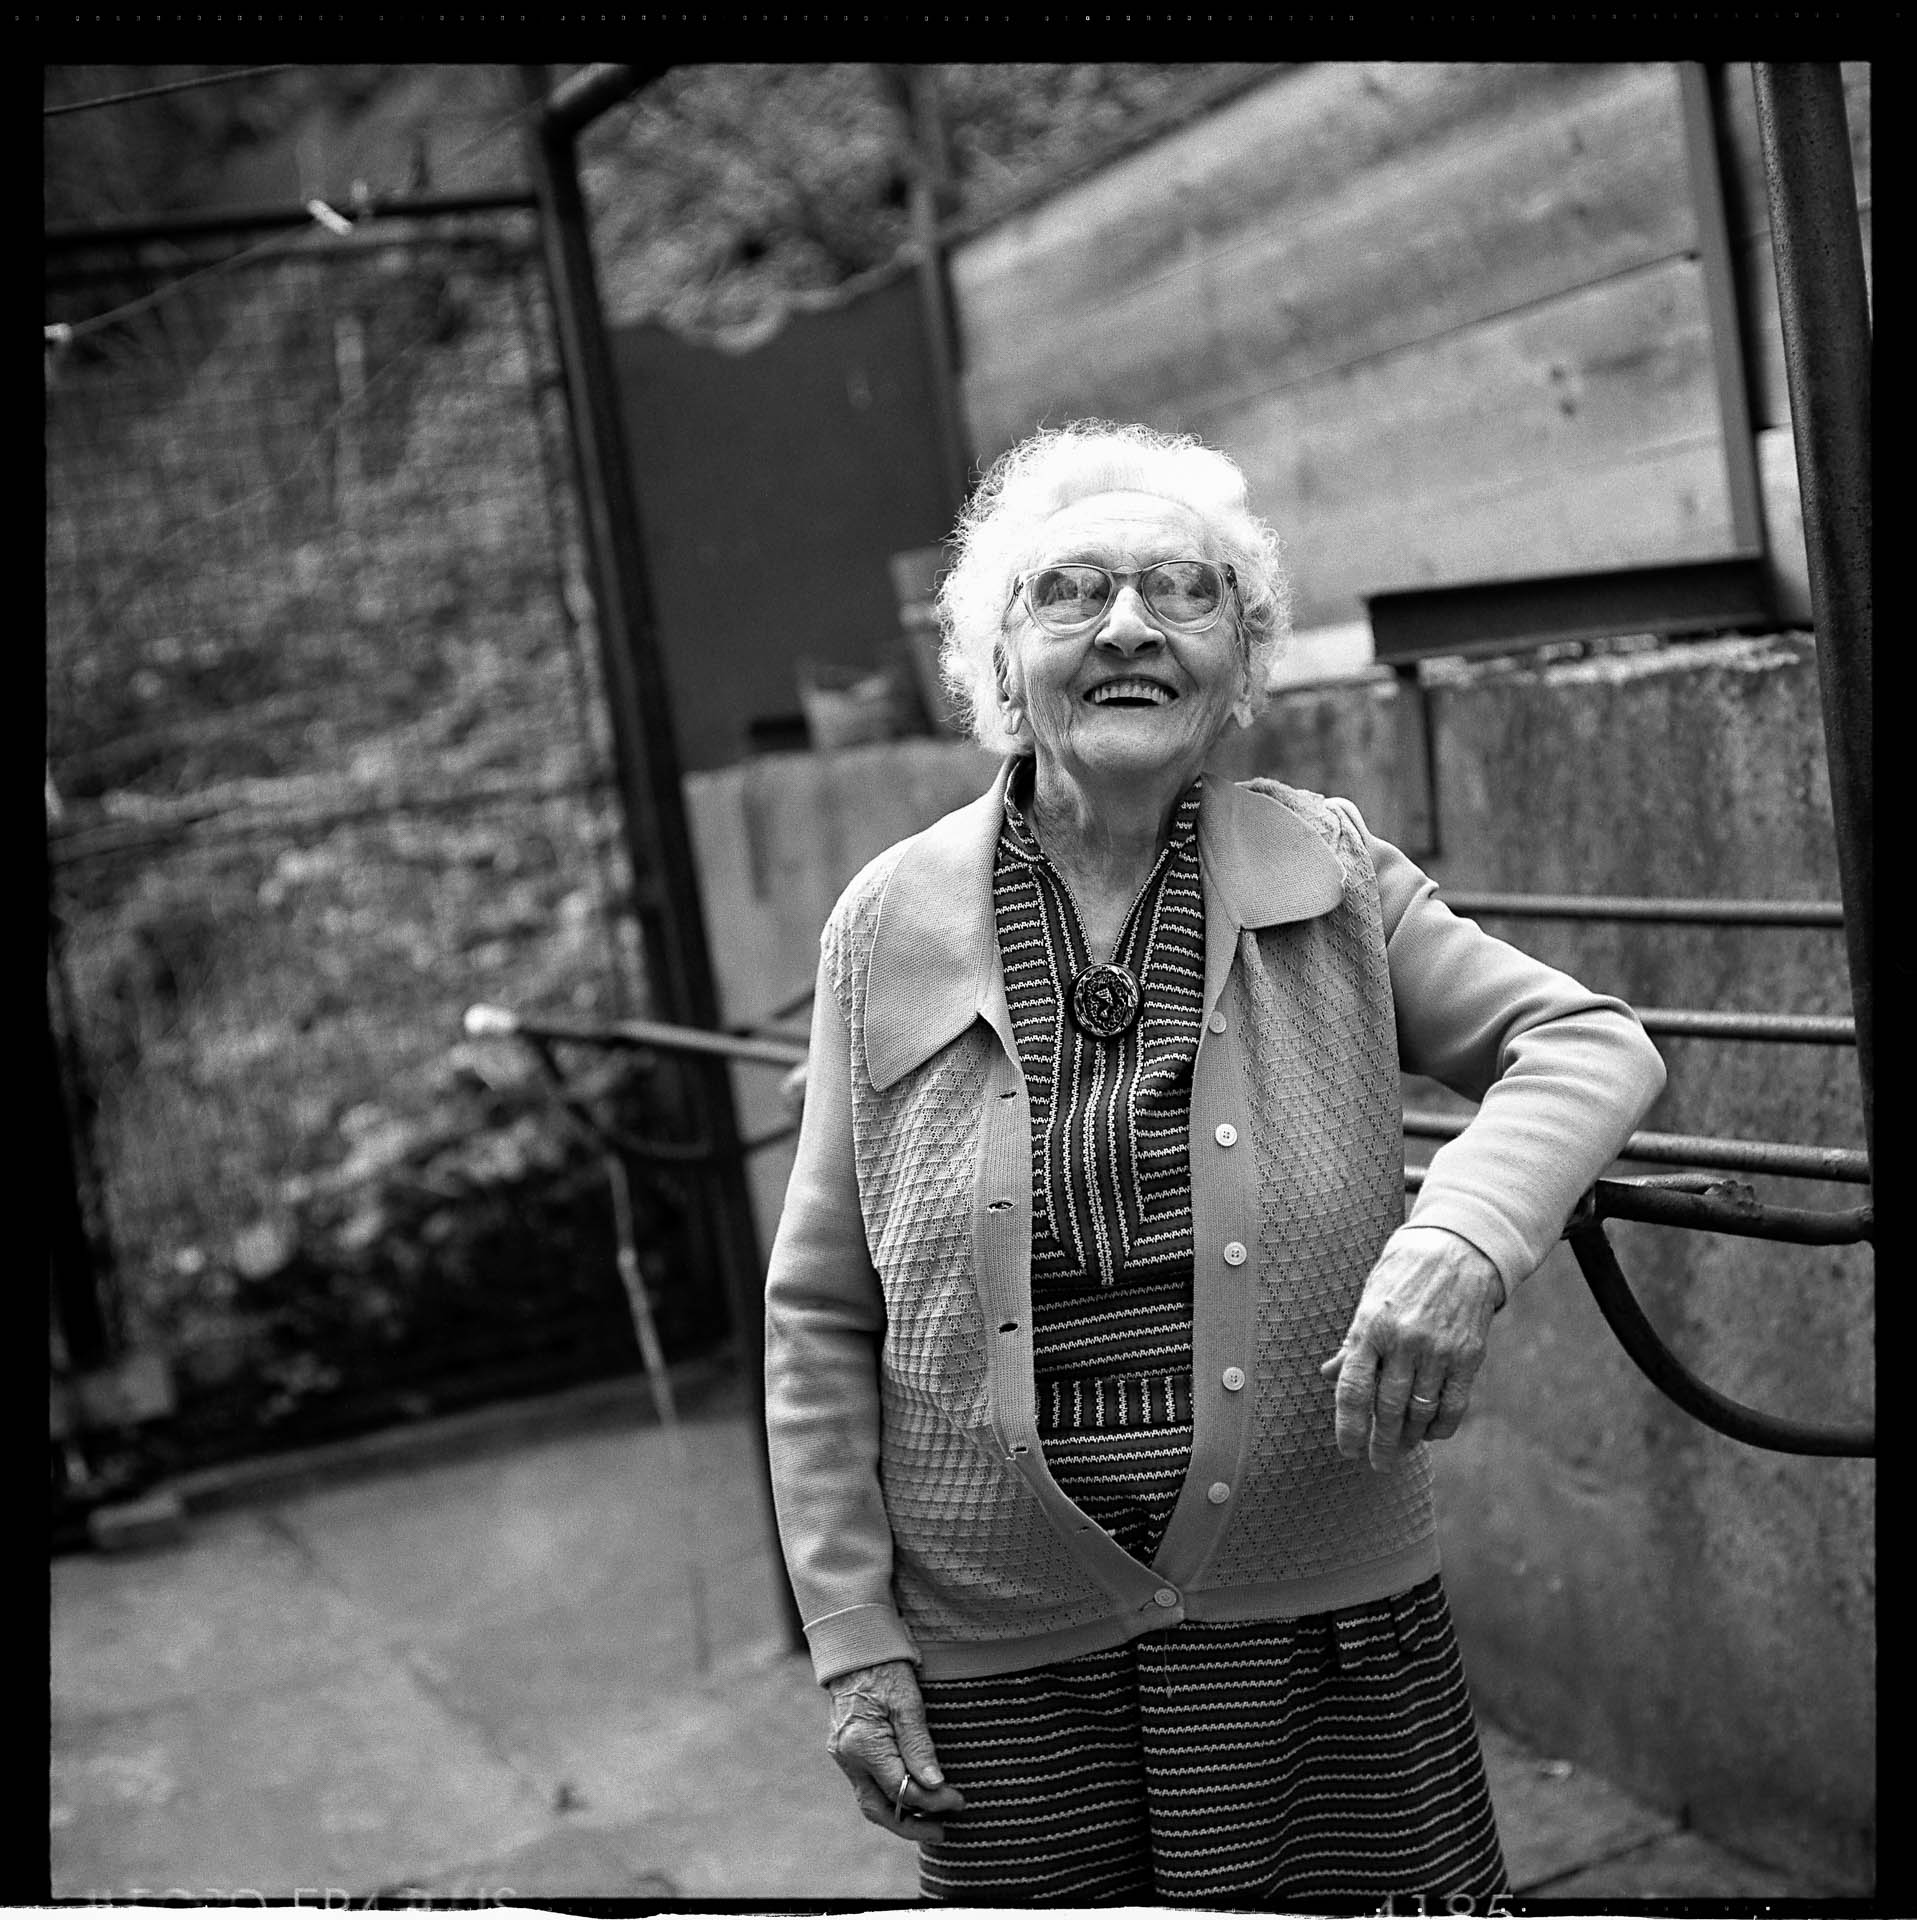 Portrét smějící se staré paní v pruhovaných šatech opírající se o klepač na dvorku